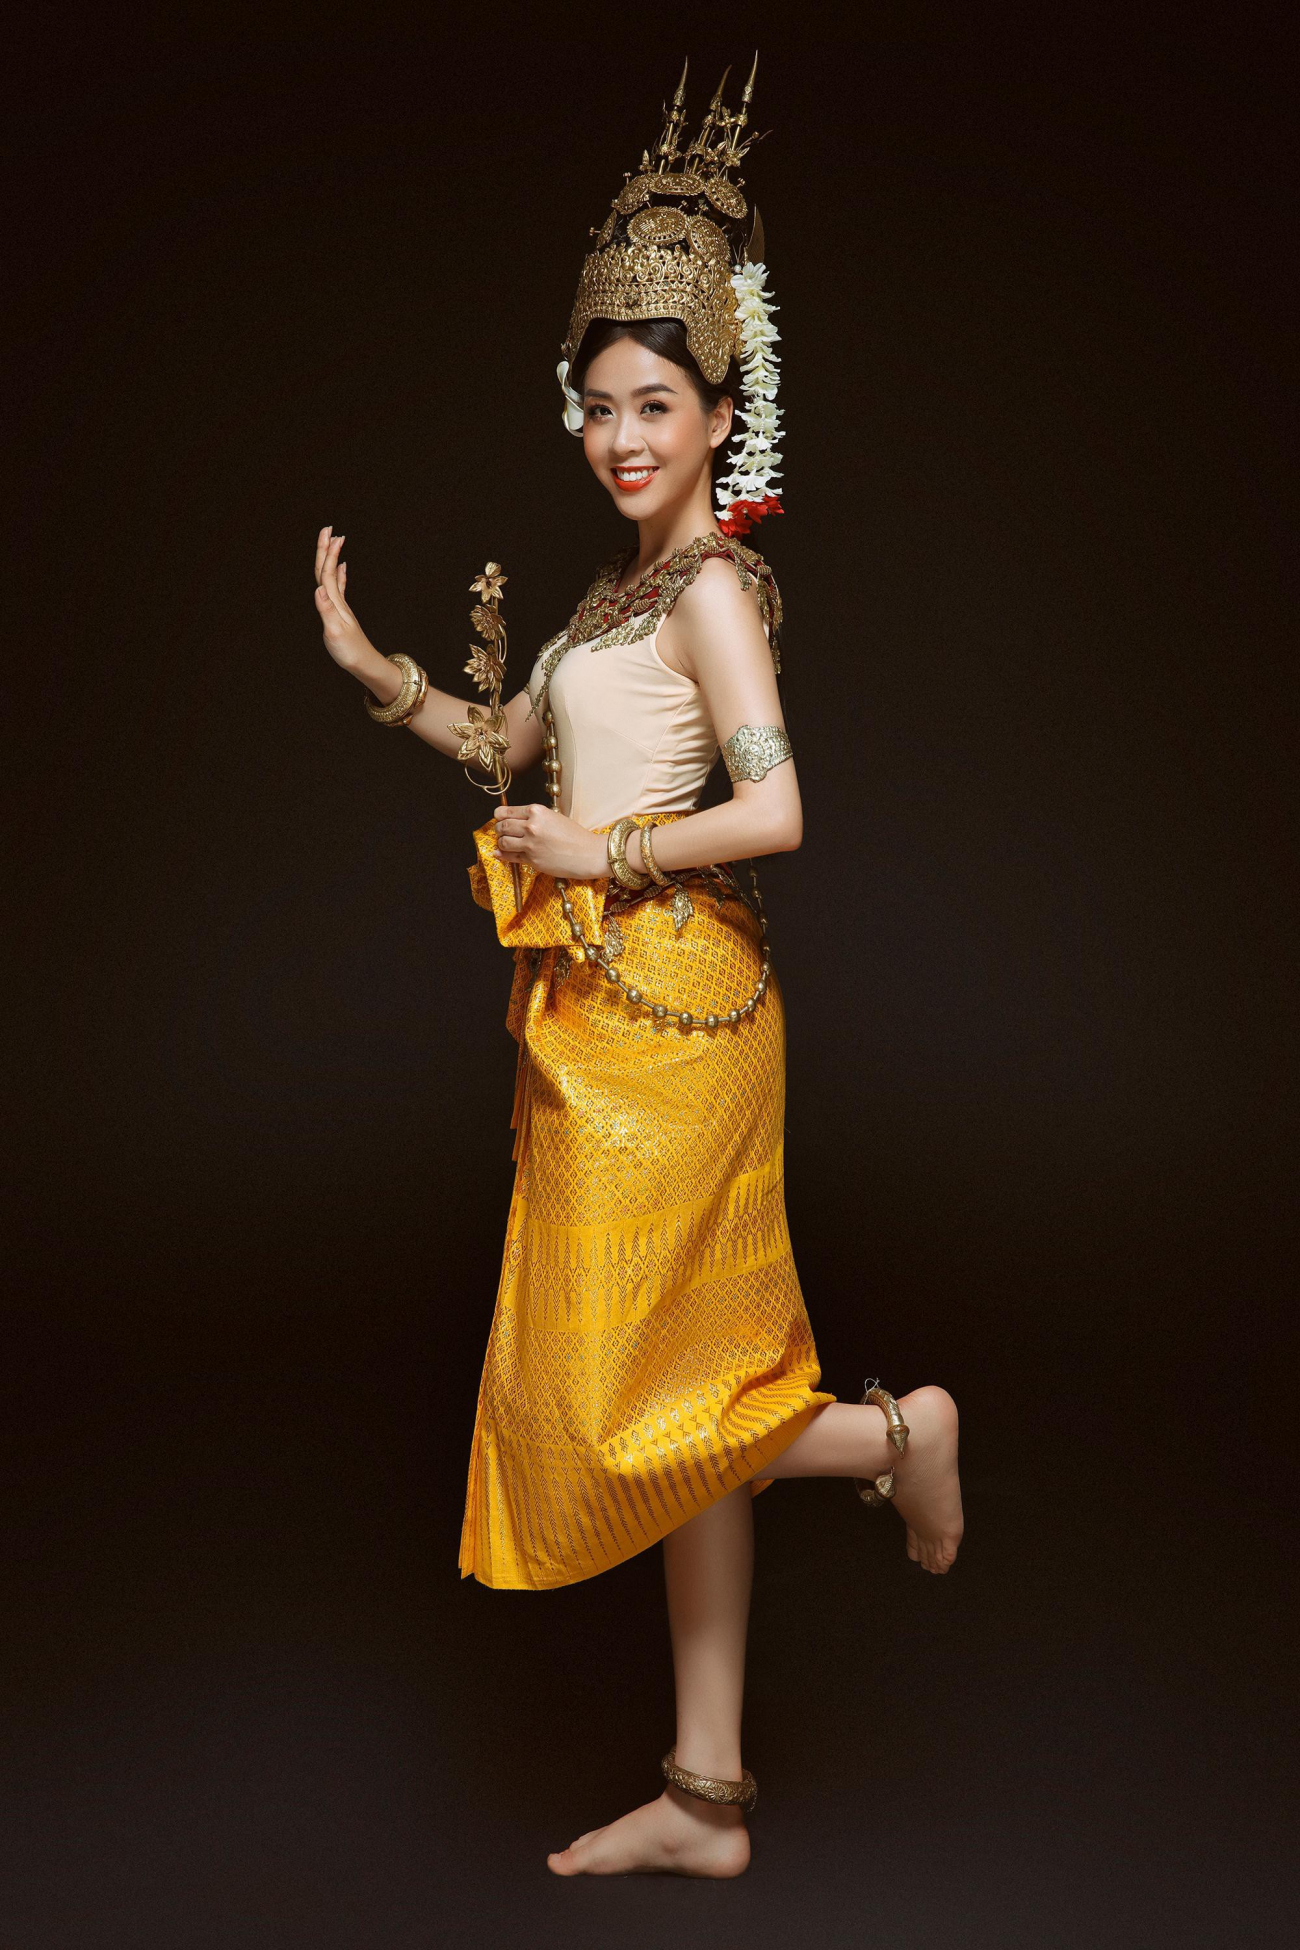 Hoa khôi sinh viên tp cần thơ đẹp dịu dàng với trang phục khmer - 6